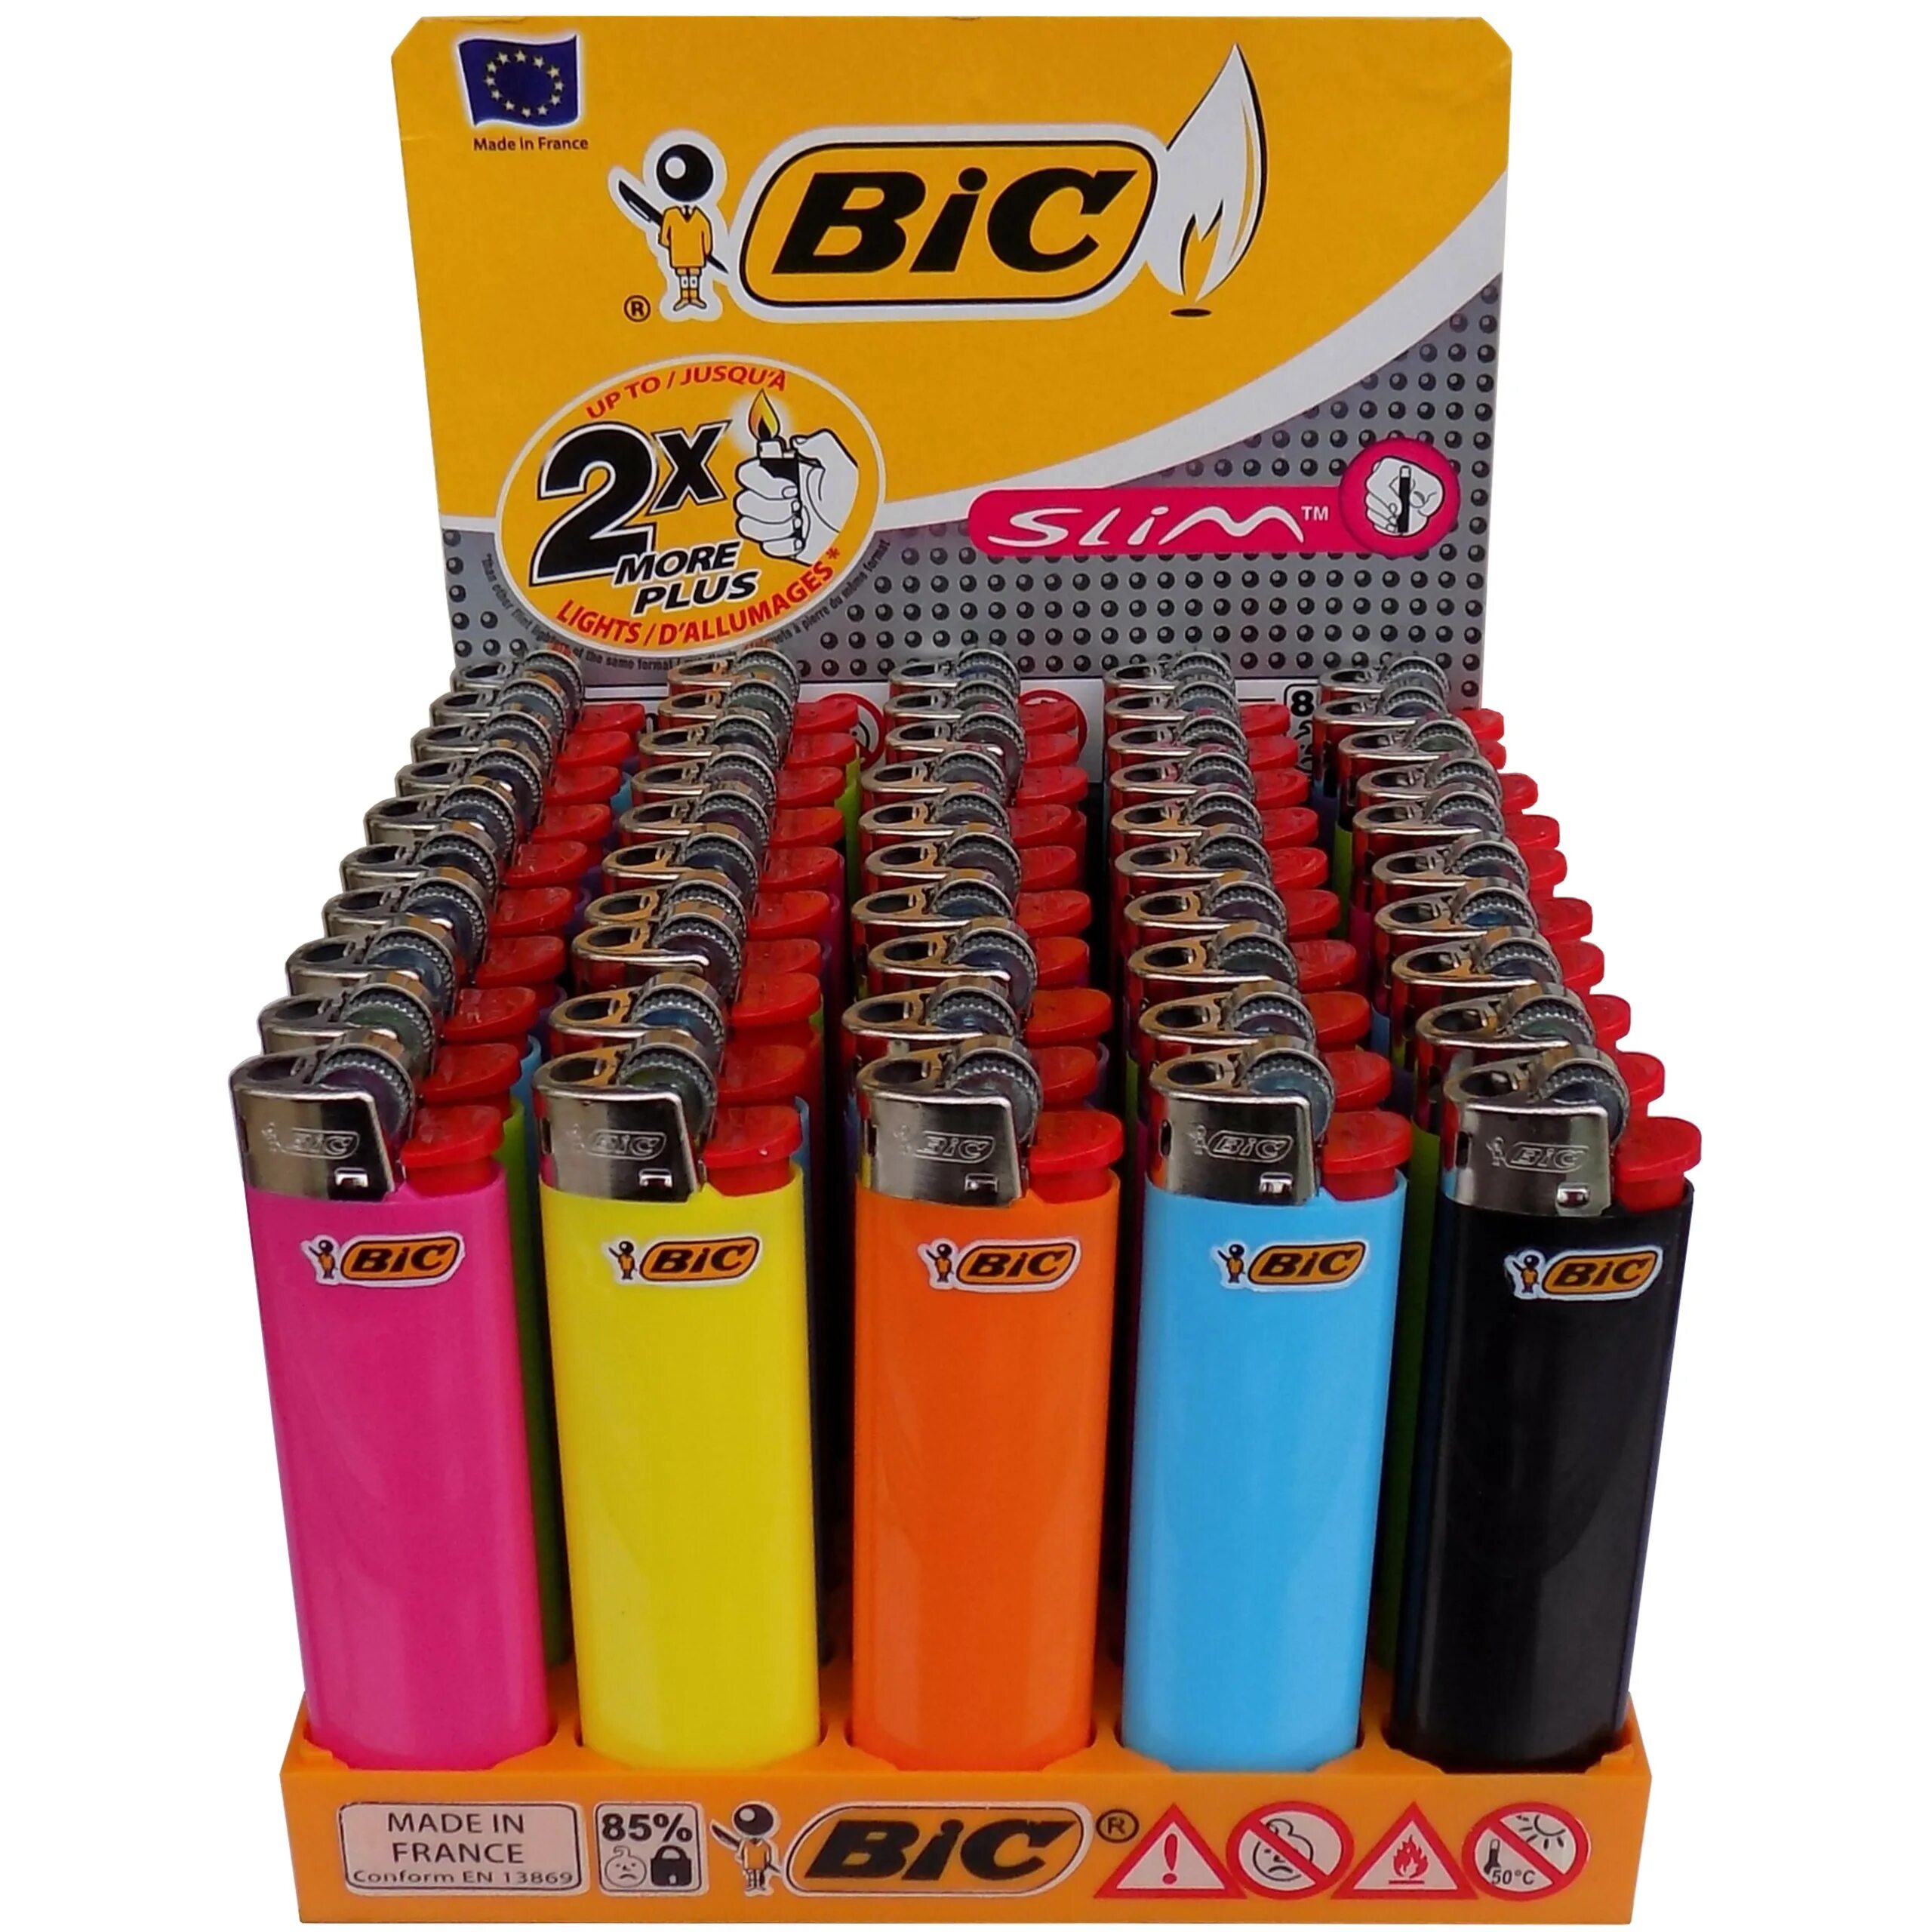 Зажигалка BIC j3 цветная. Зажигалки BIC j3 Slim. Зажигалки BIC Slim j3 Miami. Зажигалки "BIC" 1/50.